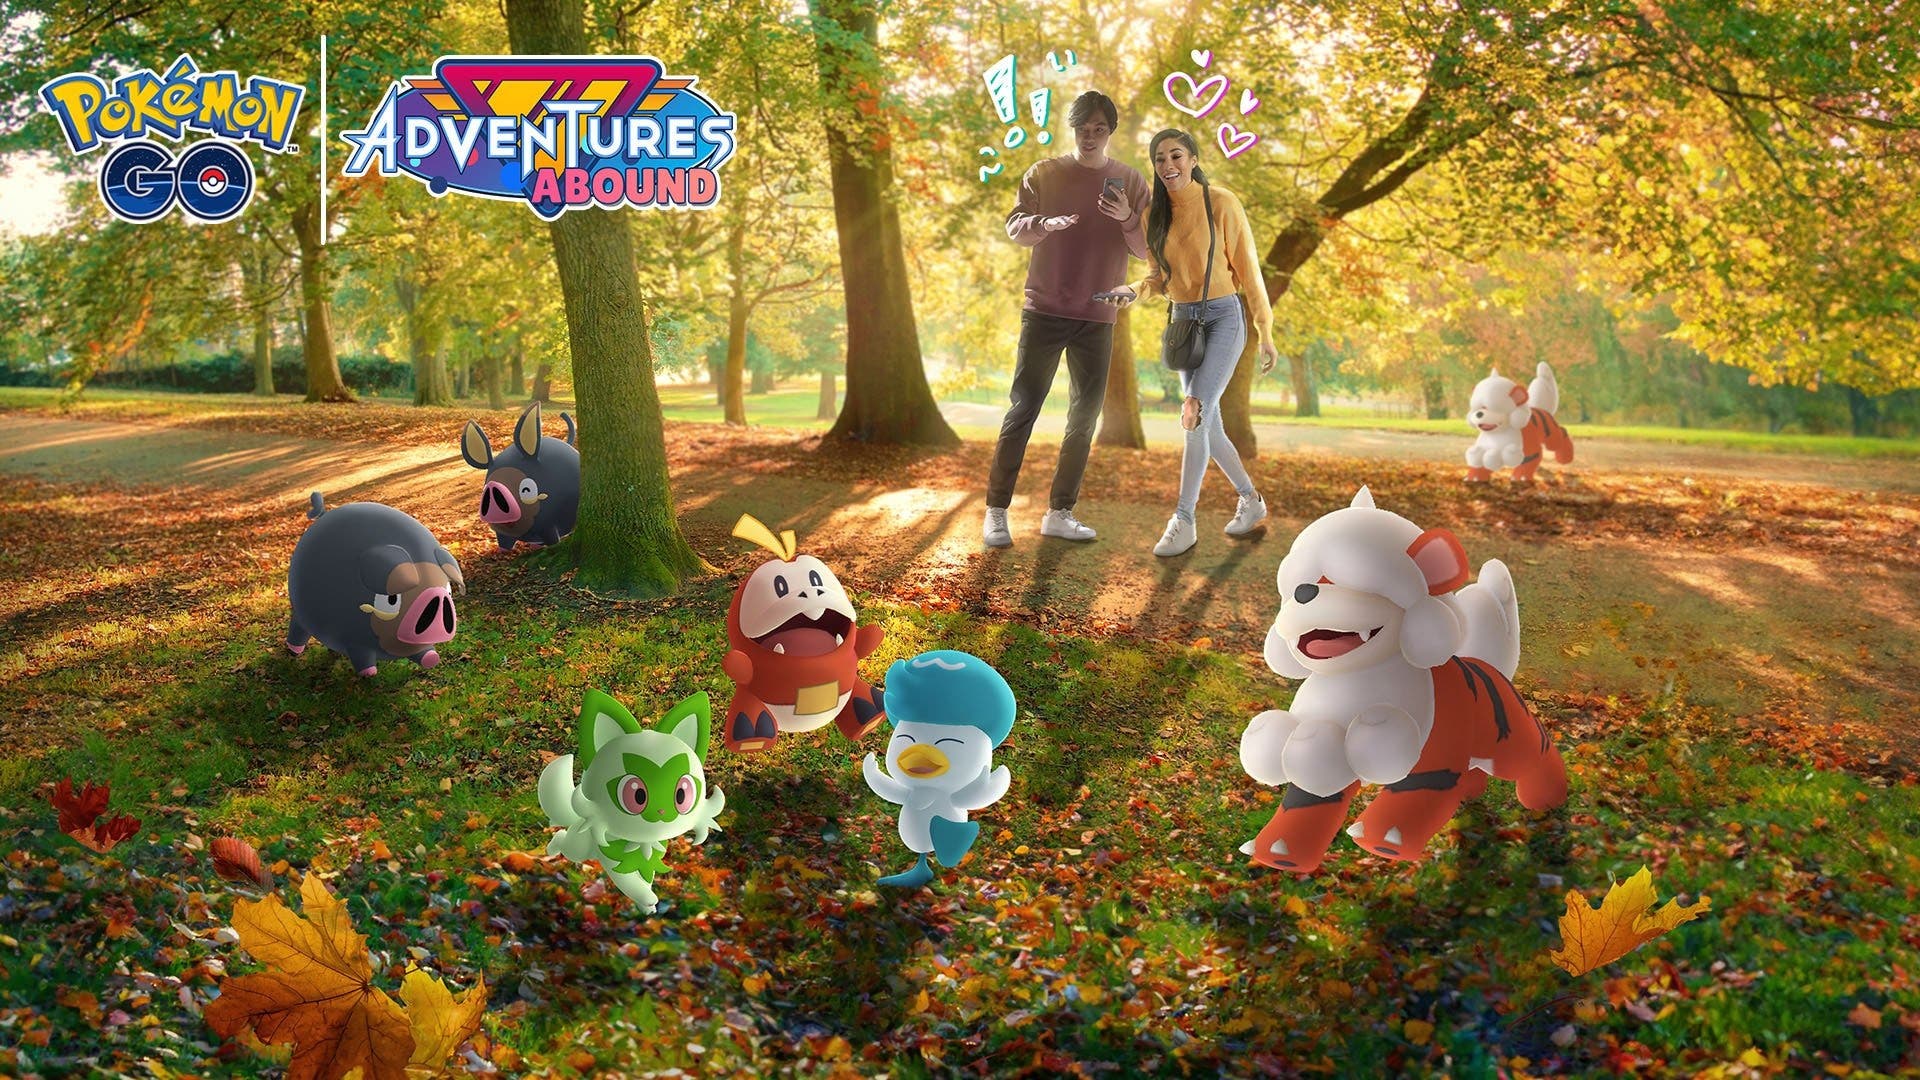 Pokémon GO detalla su nueva temporada Aventuras por Doquier con Pokémon de Paldea, la Liga y más